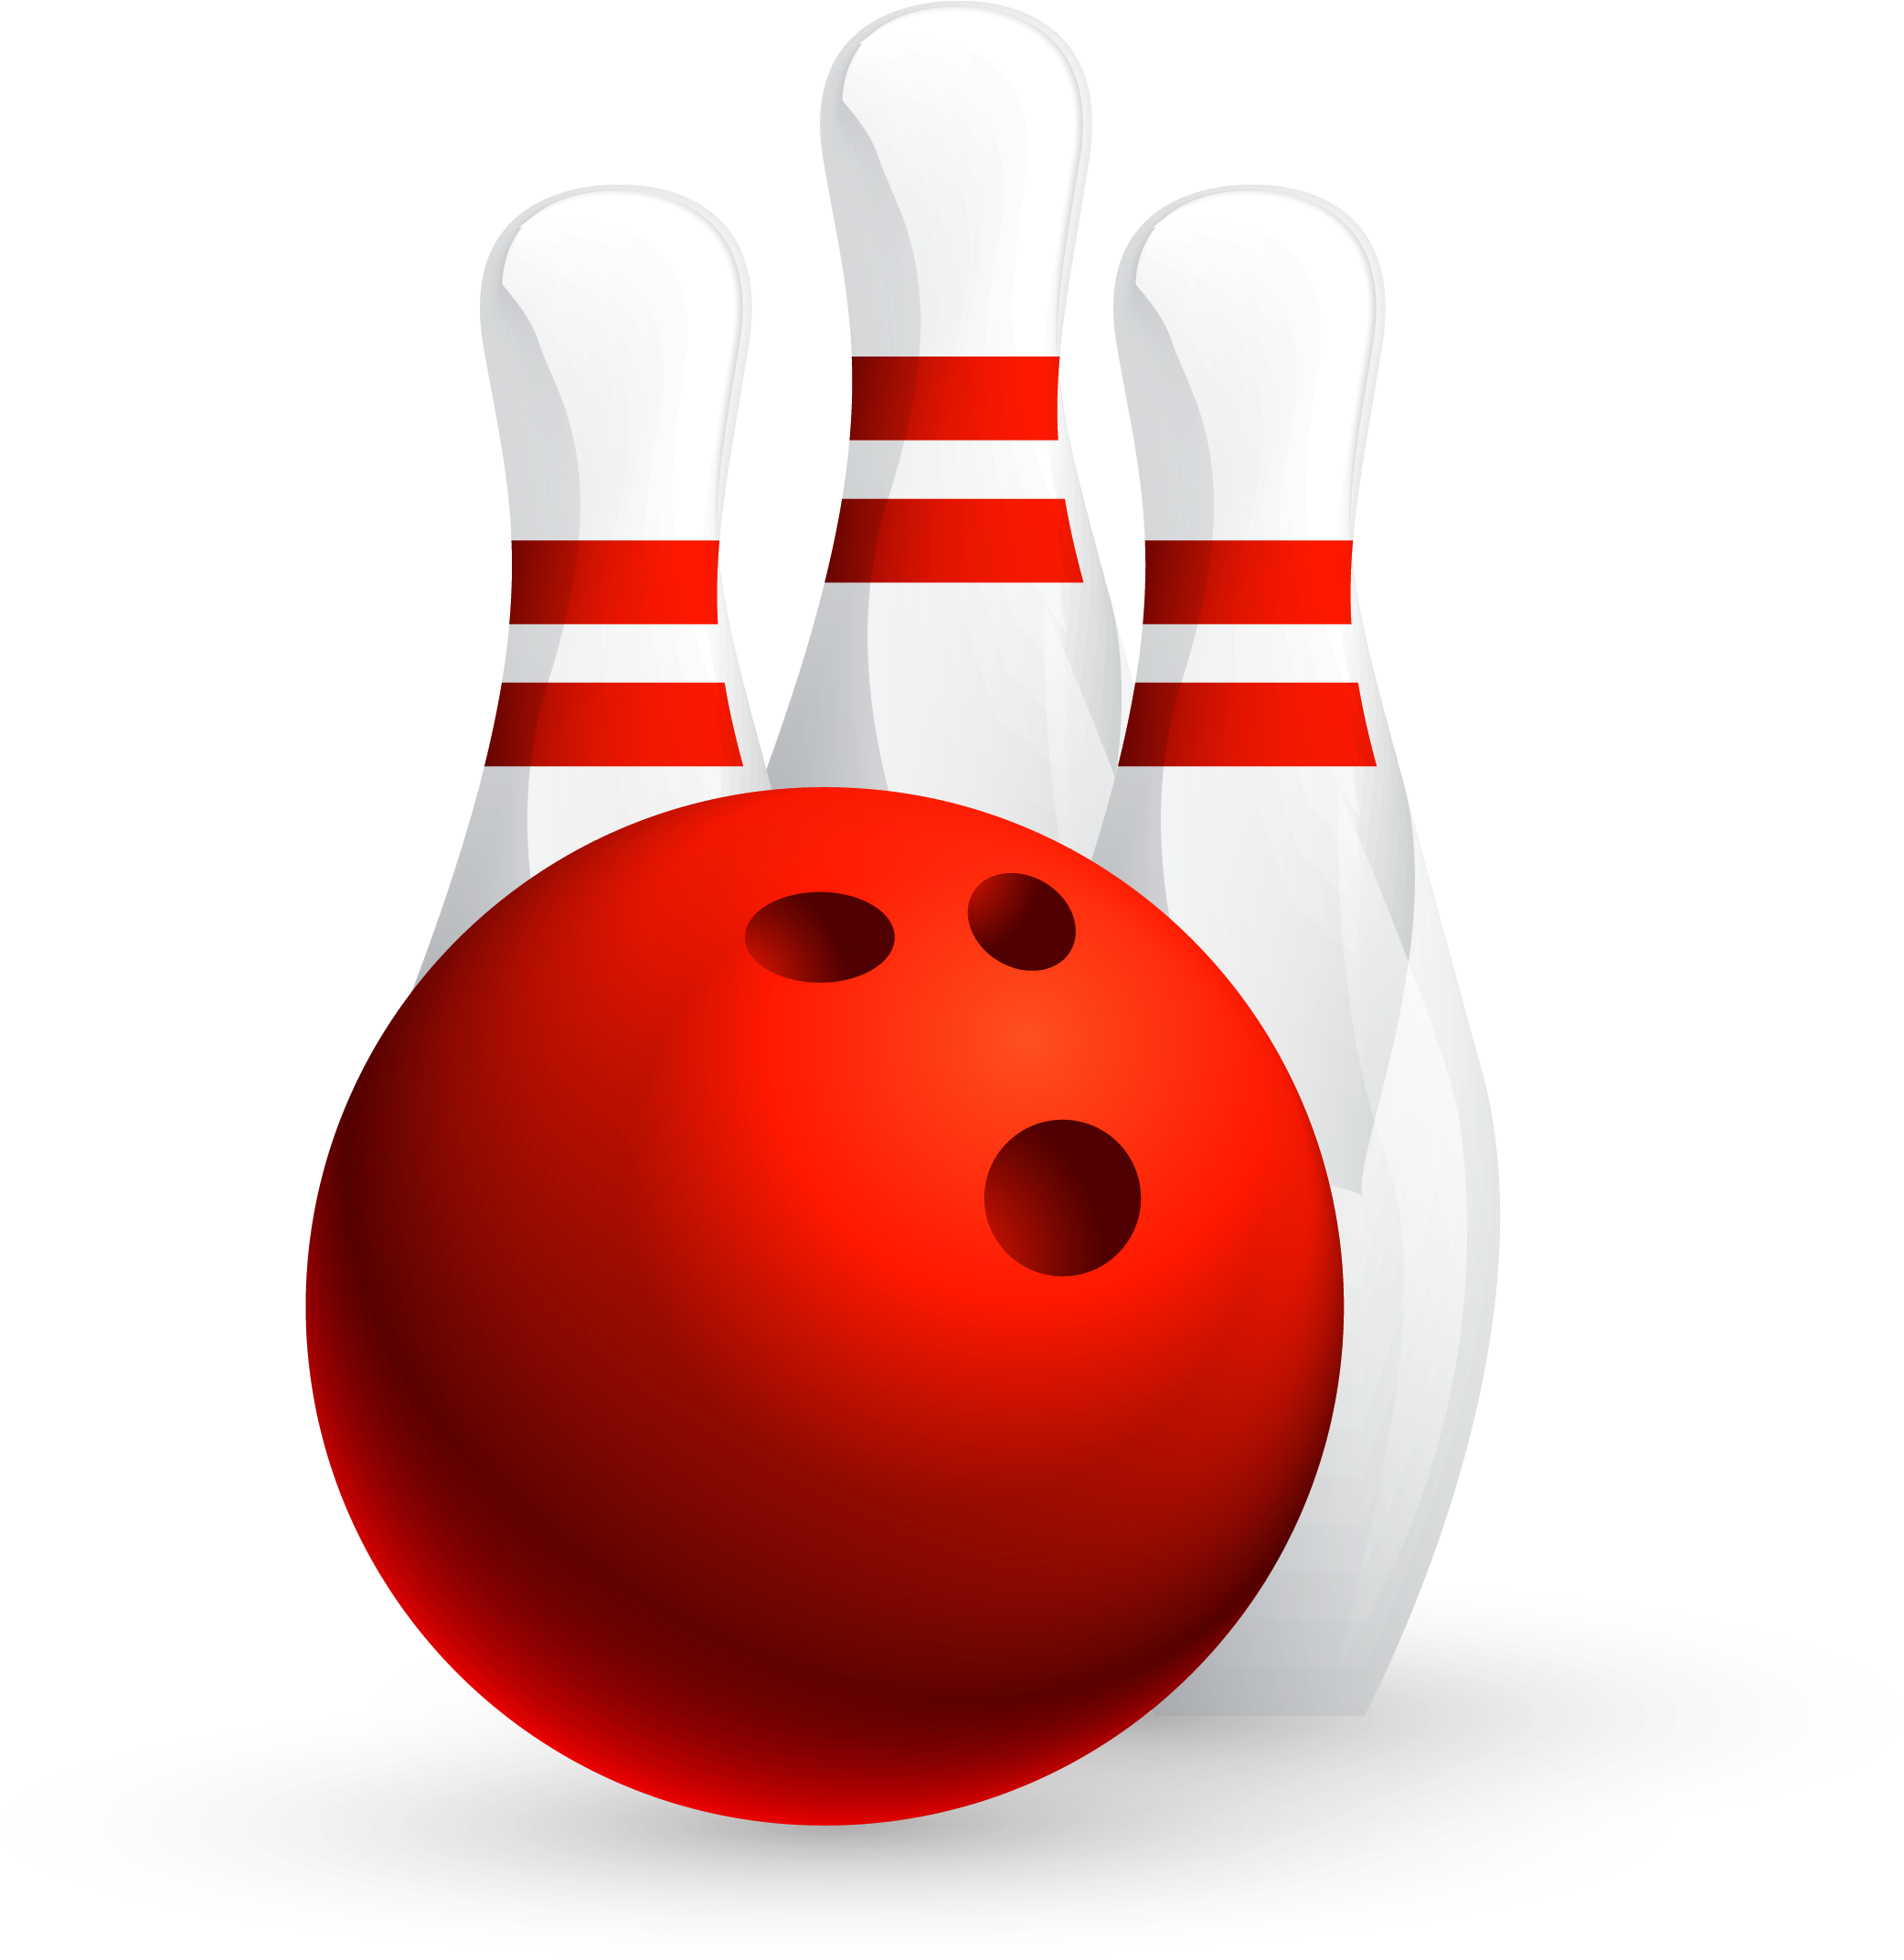 Bowling Ball Ten-pin Bowling Game Bowling League - Red Bowling Ball (2244x2175)